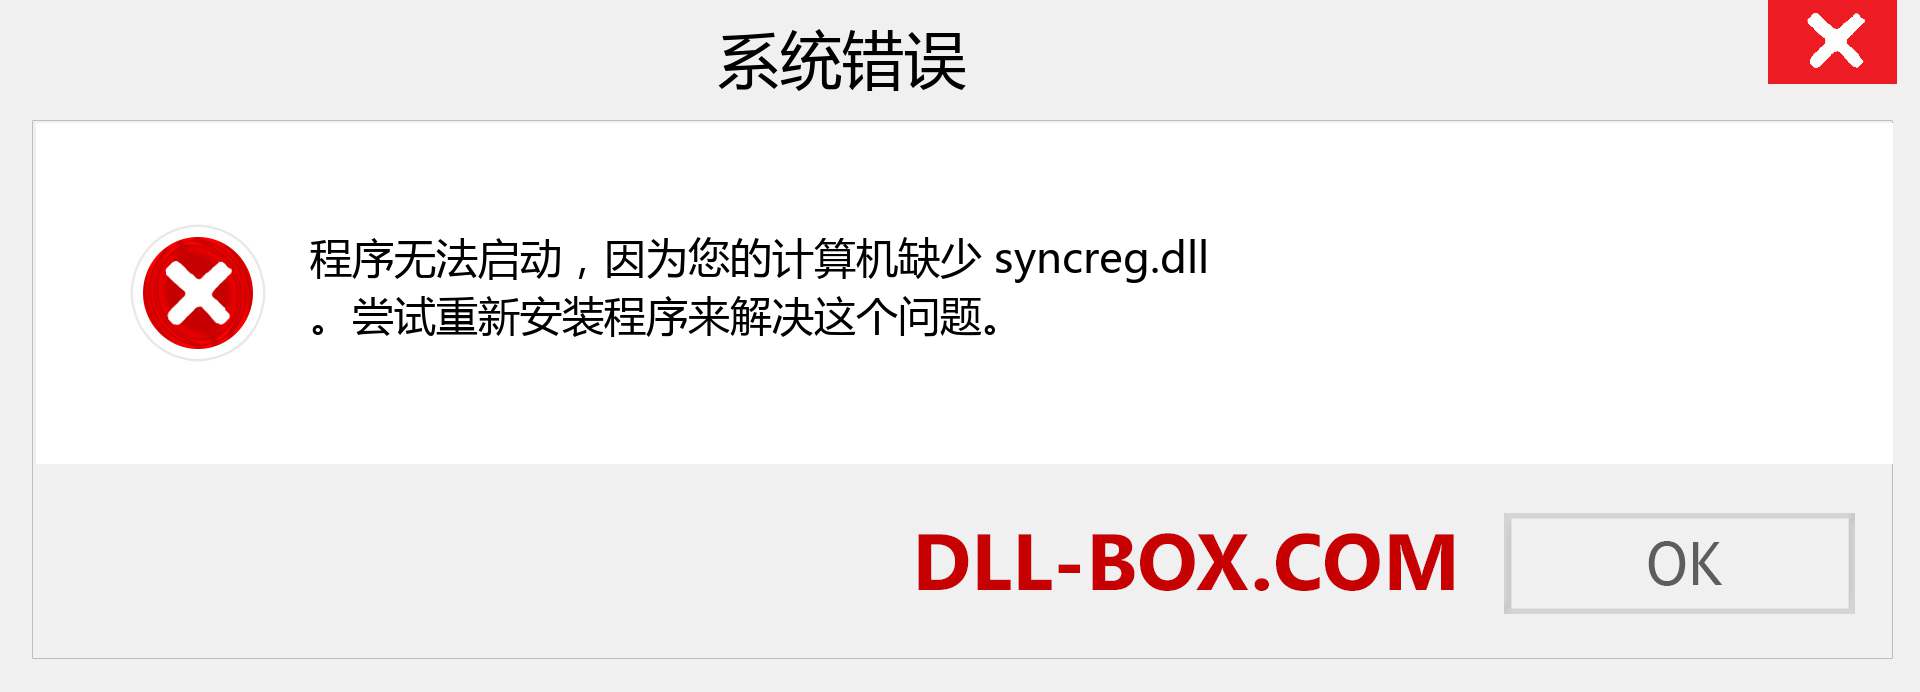 syncreg.dll 文件丢失？。 适用于 Windows 7、8、10 的下载 - 修复 Windows、照片、图像上的 syncreg dll 丢失错误